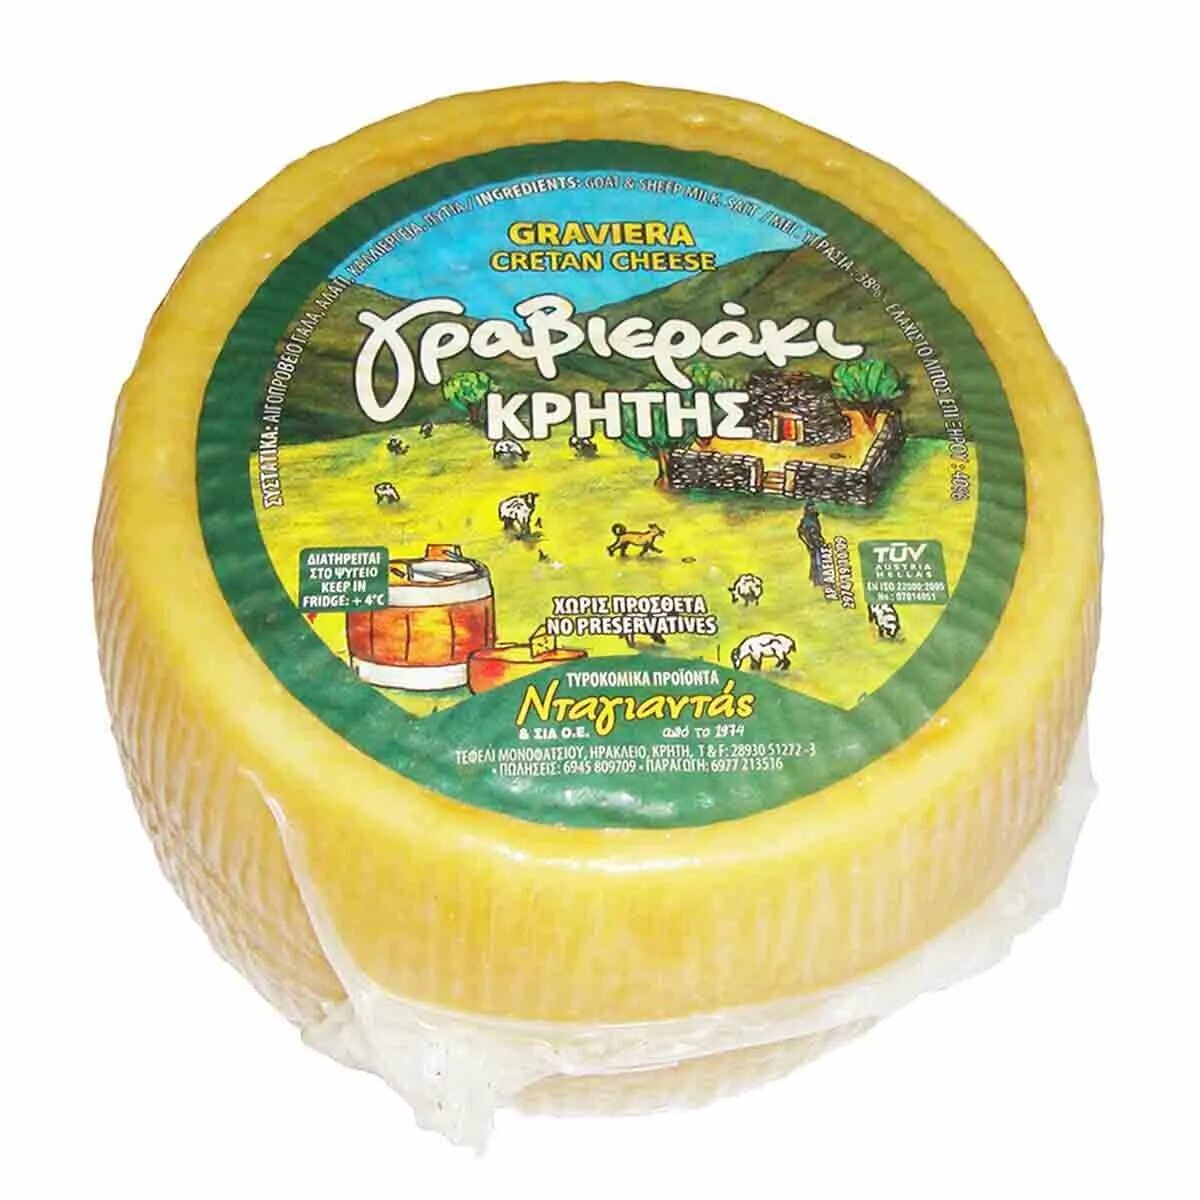 Название греческих сыров. Graviera Cheese. Греческий сыр гравьера. Гравьера сыр Крит. Сыры Греции.